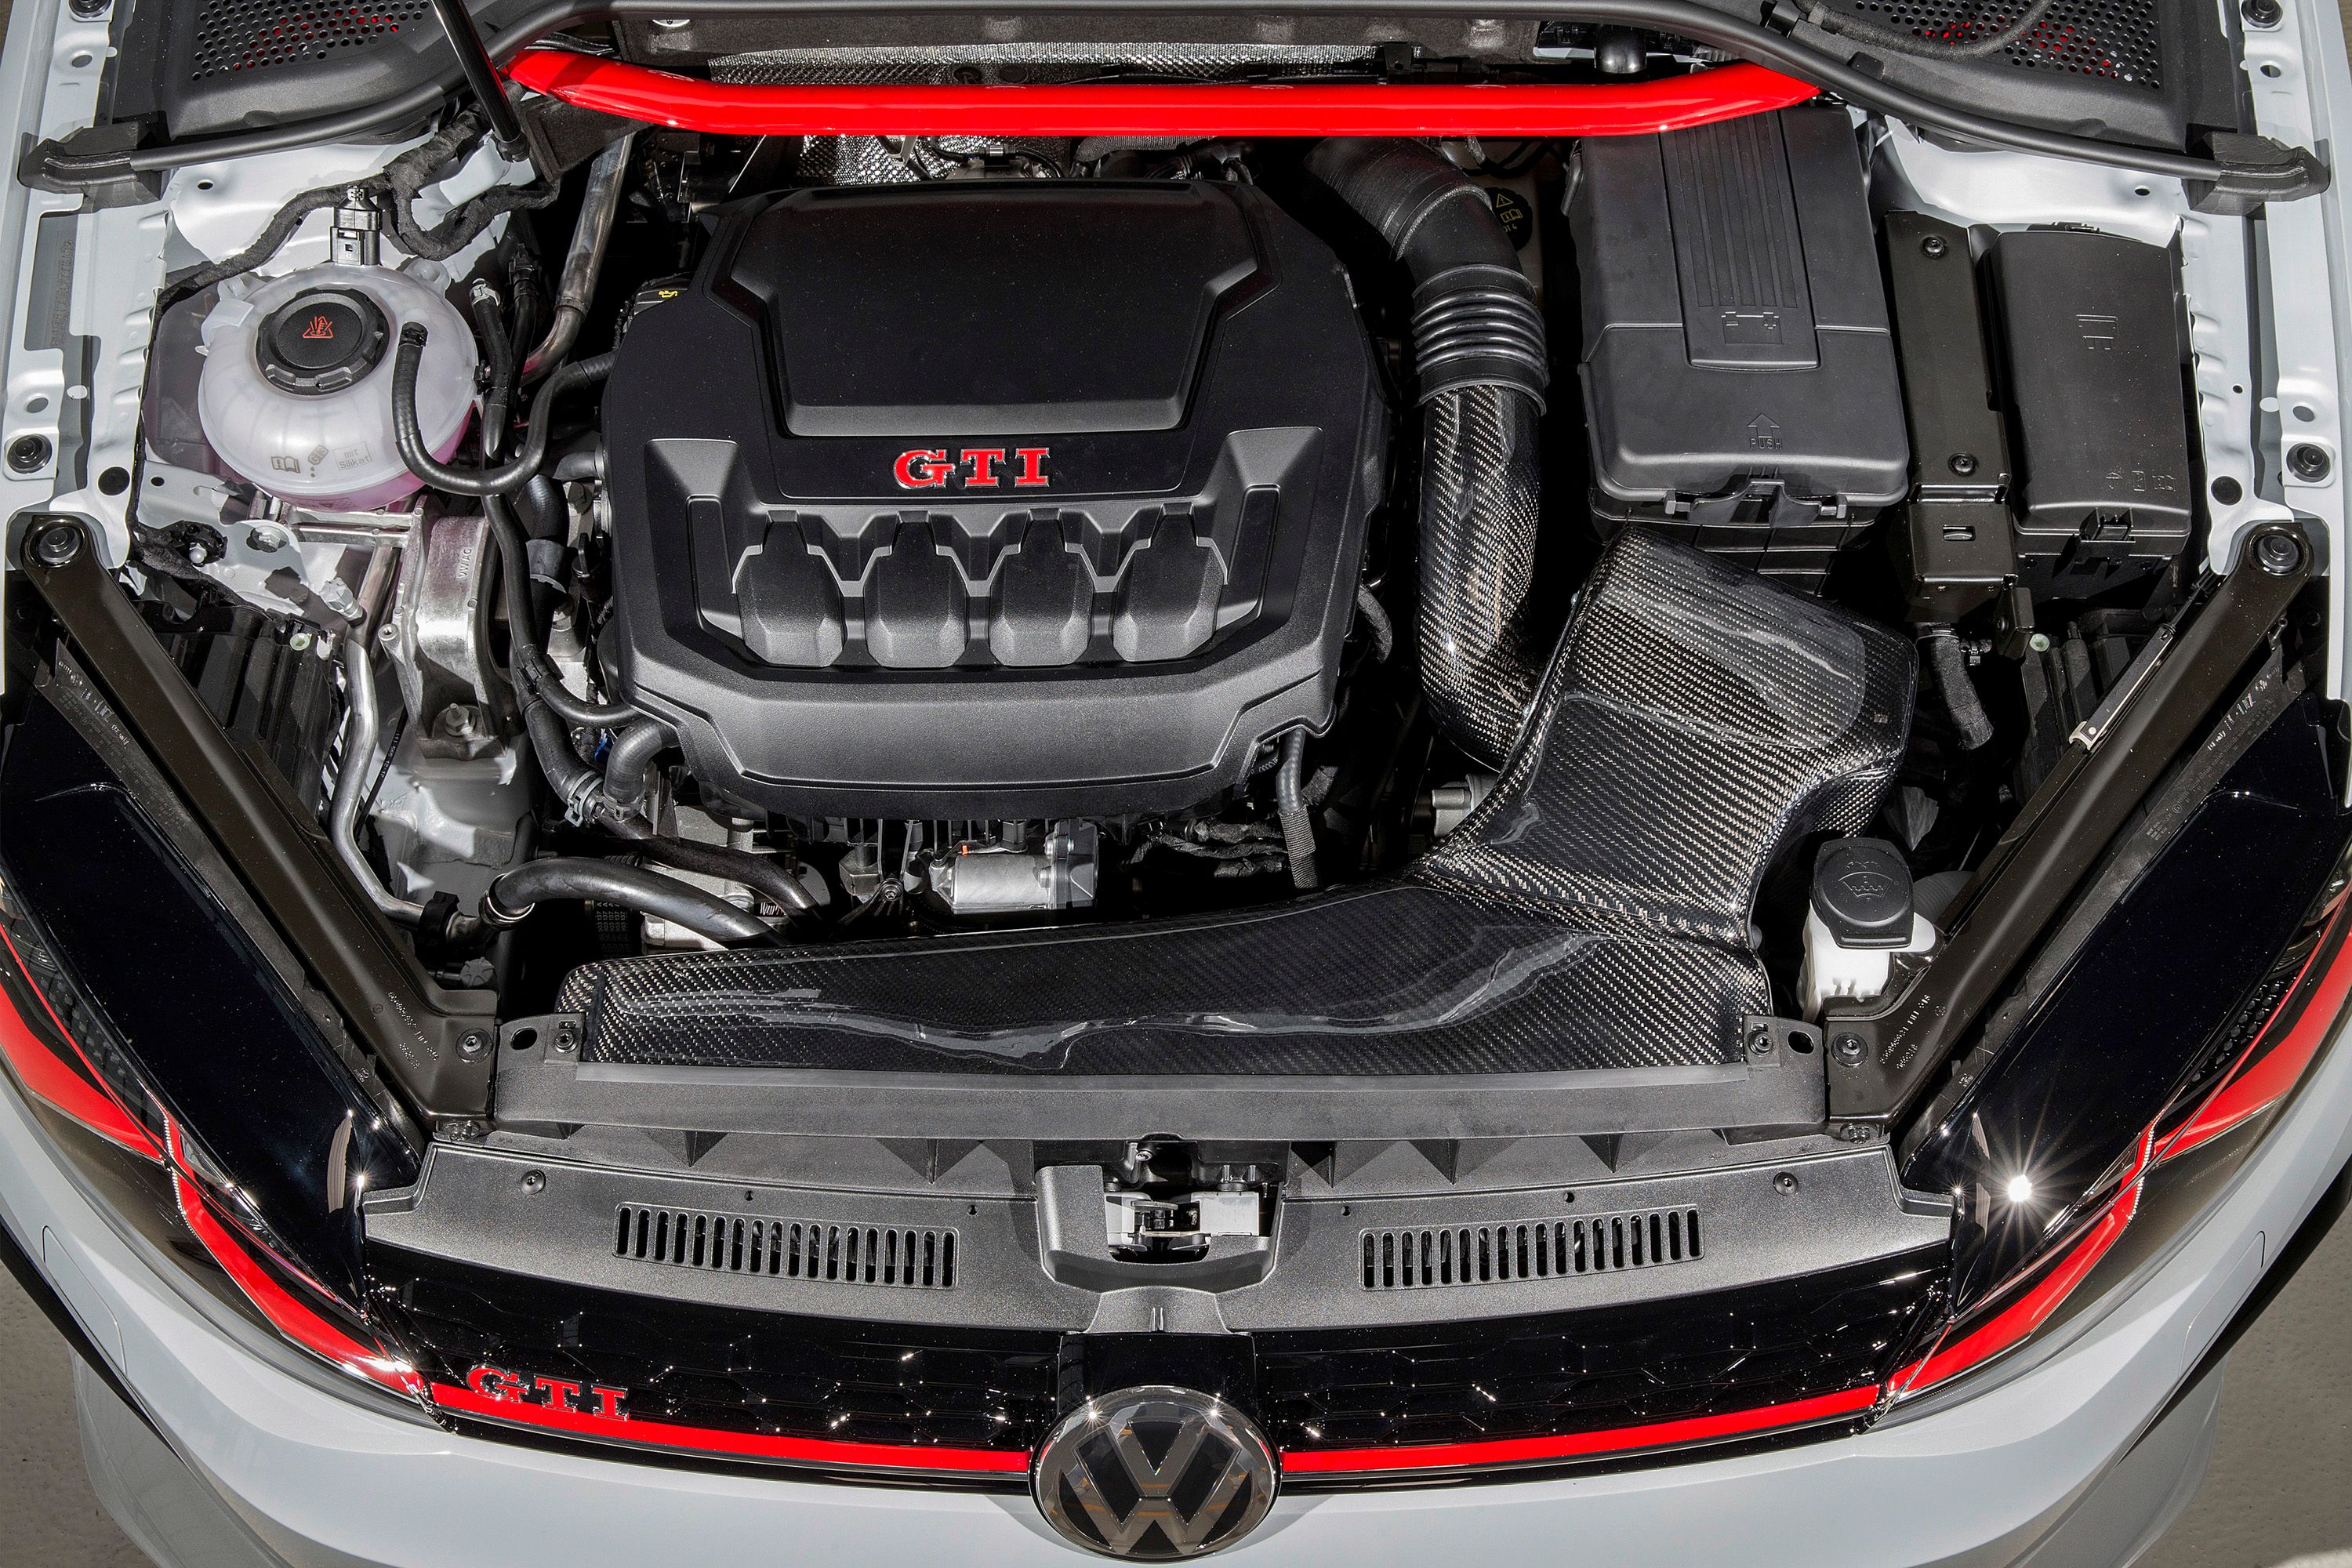 2018 Volkswagen Golf GTI Next Level